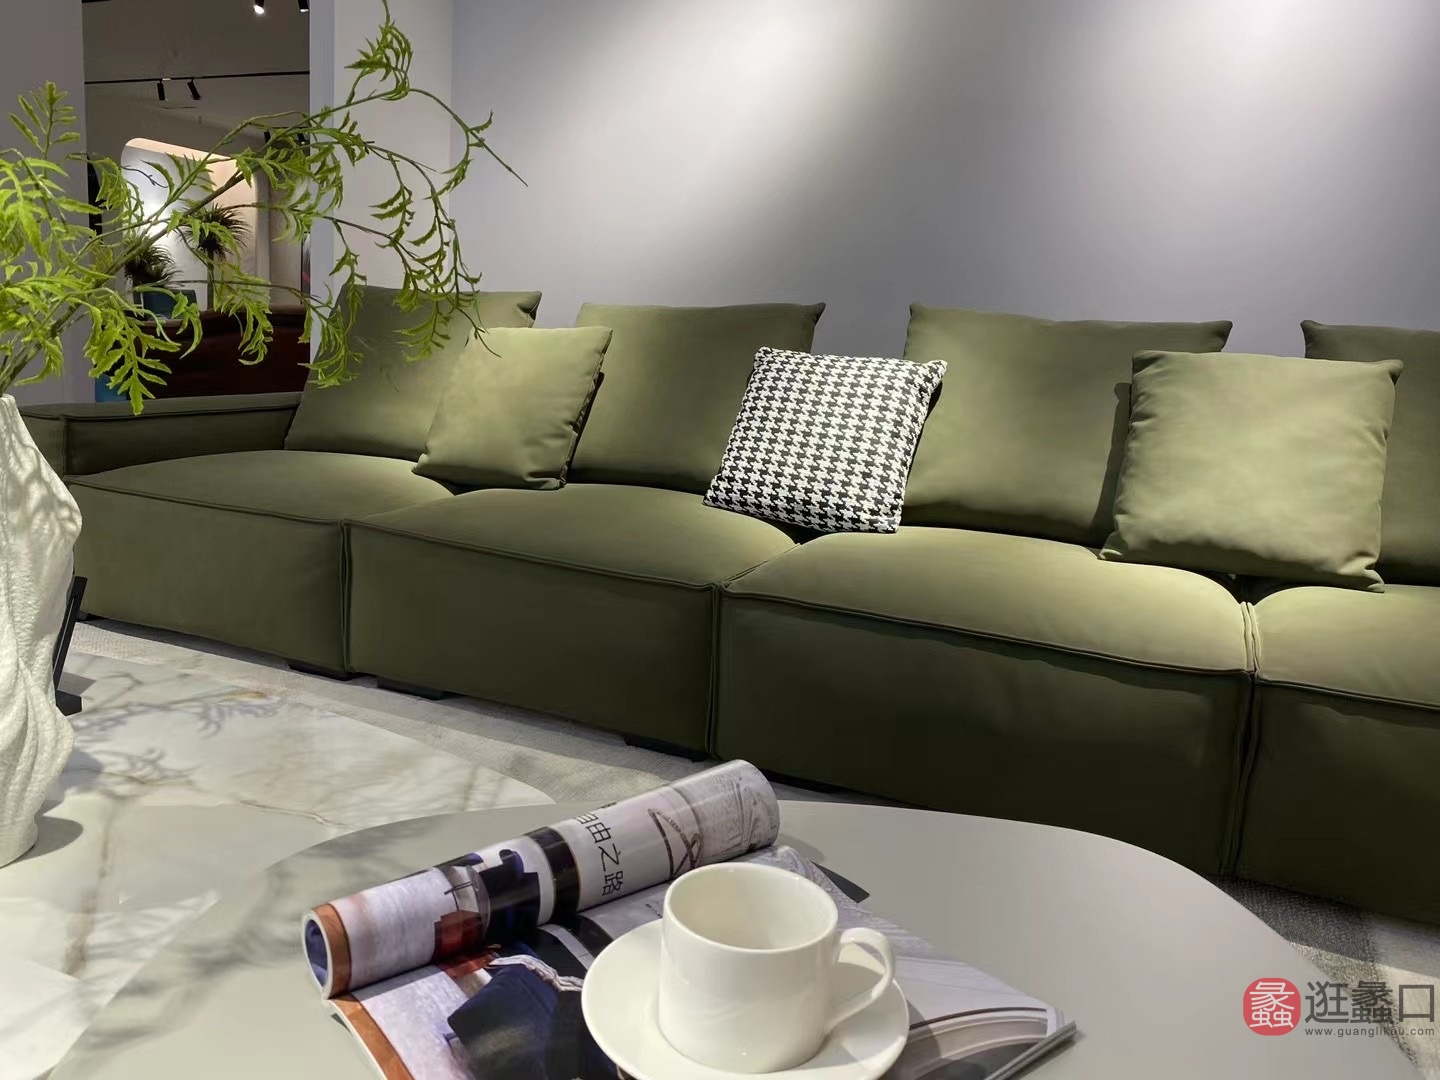 思莱德家具客厅意式极简直排沙发四人位绿色设计师款模块沙发SLD010